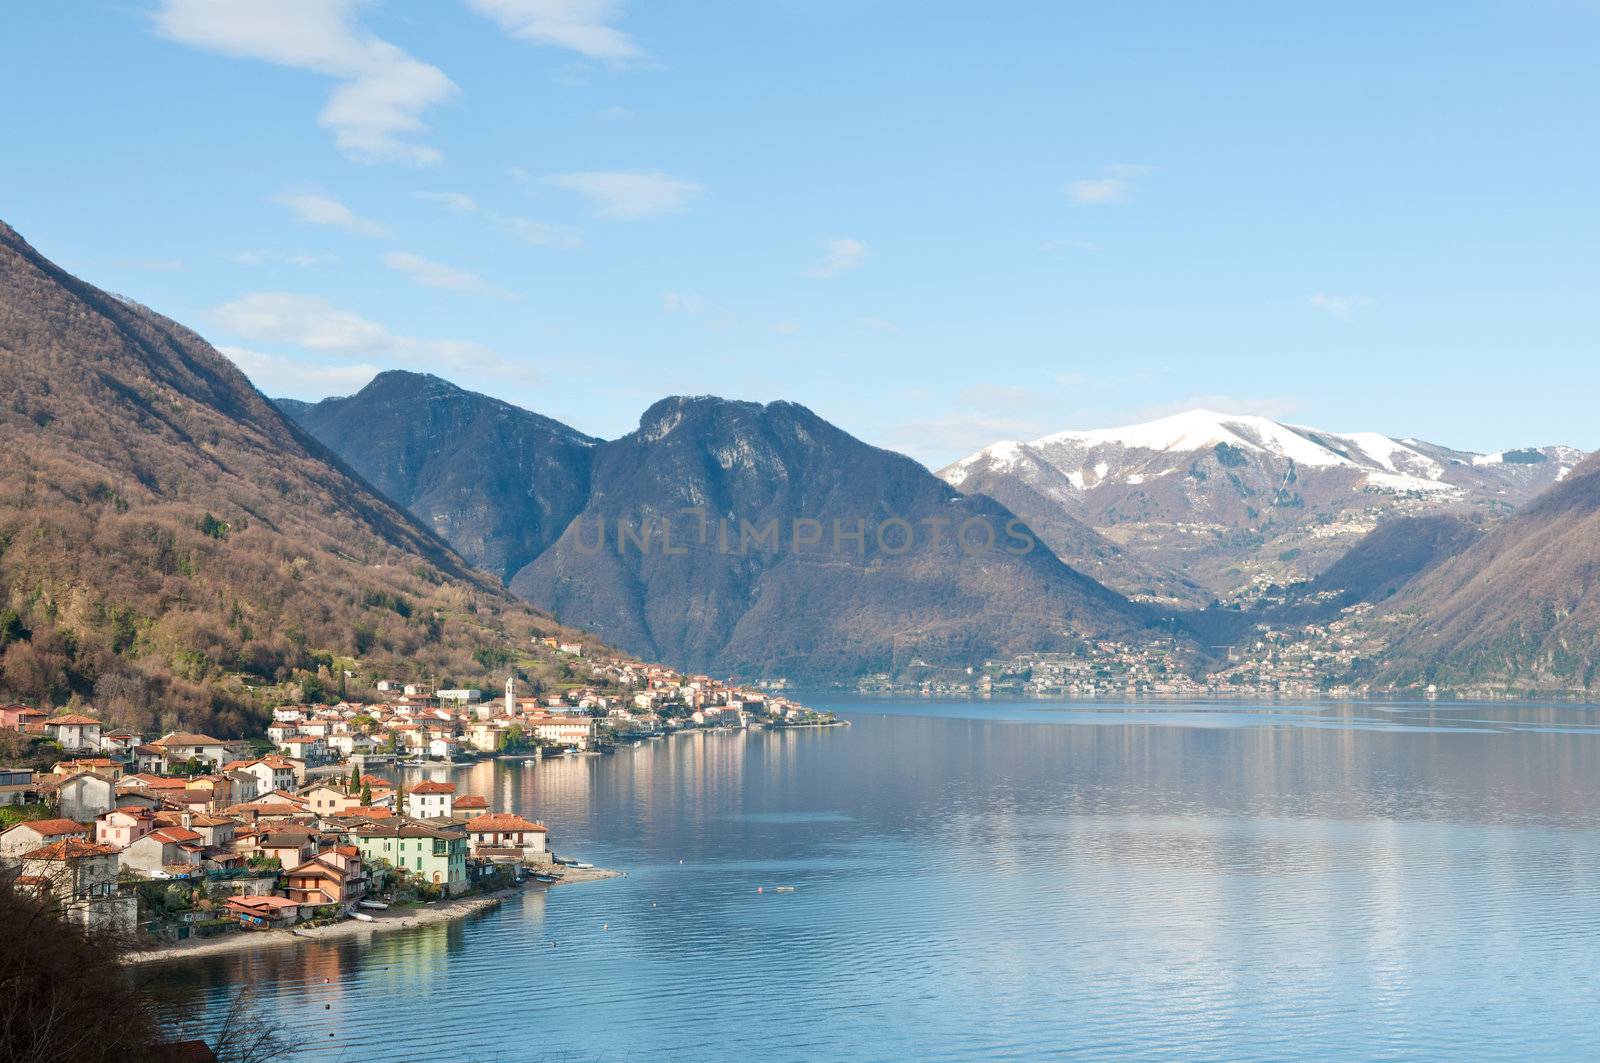 Lago Como, Italy by ruigsantos